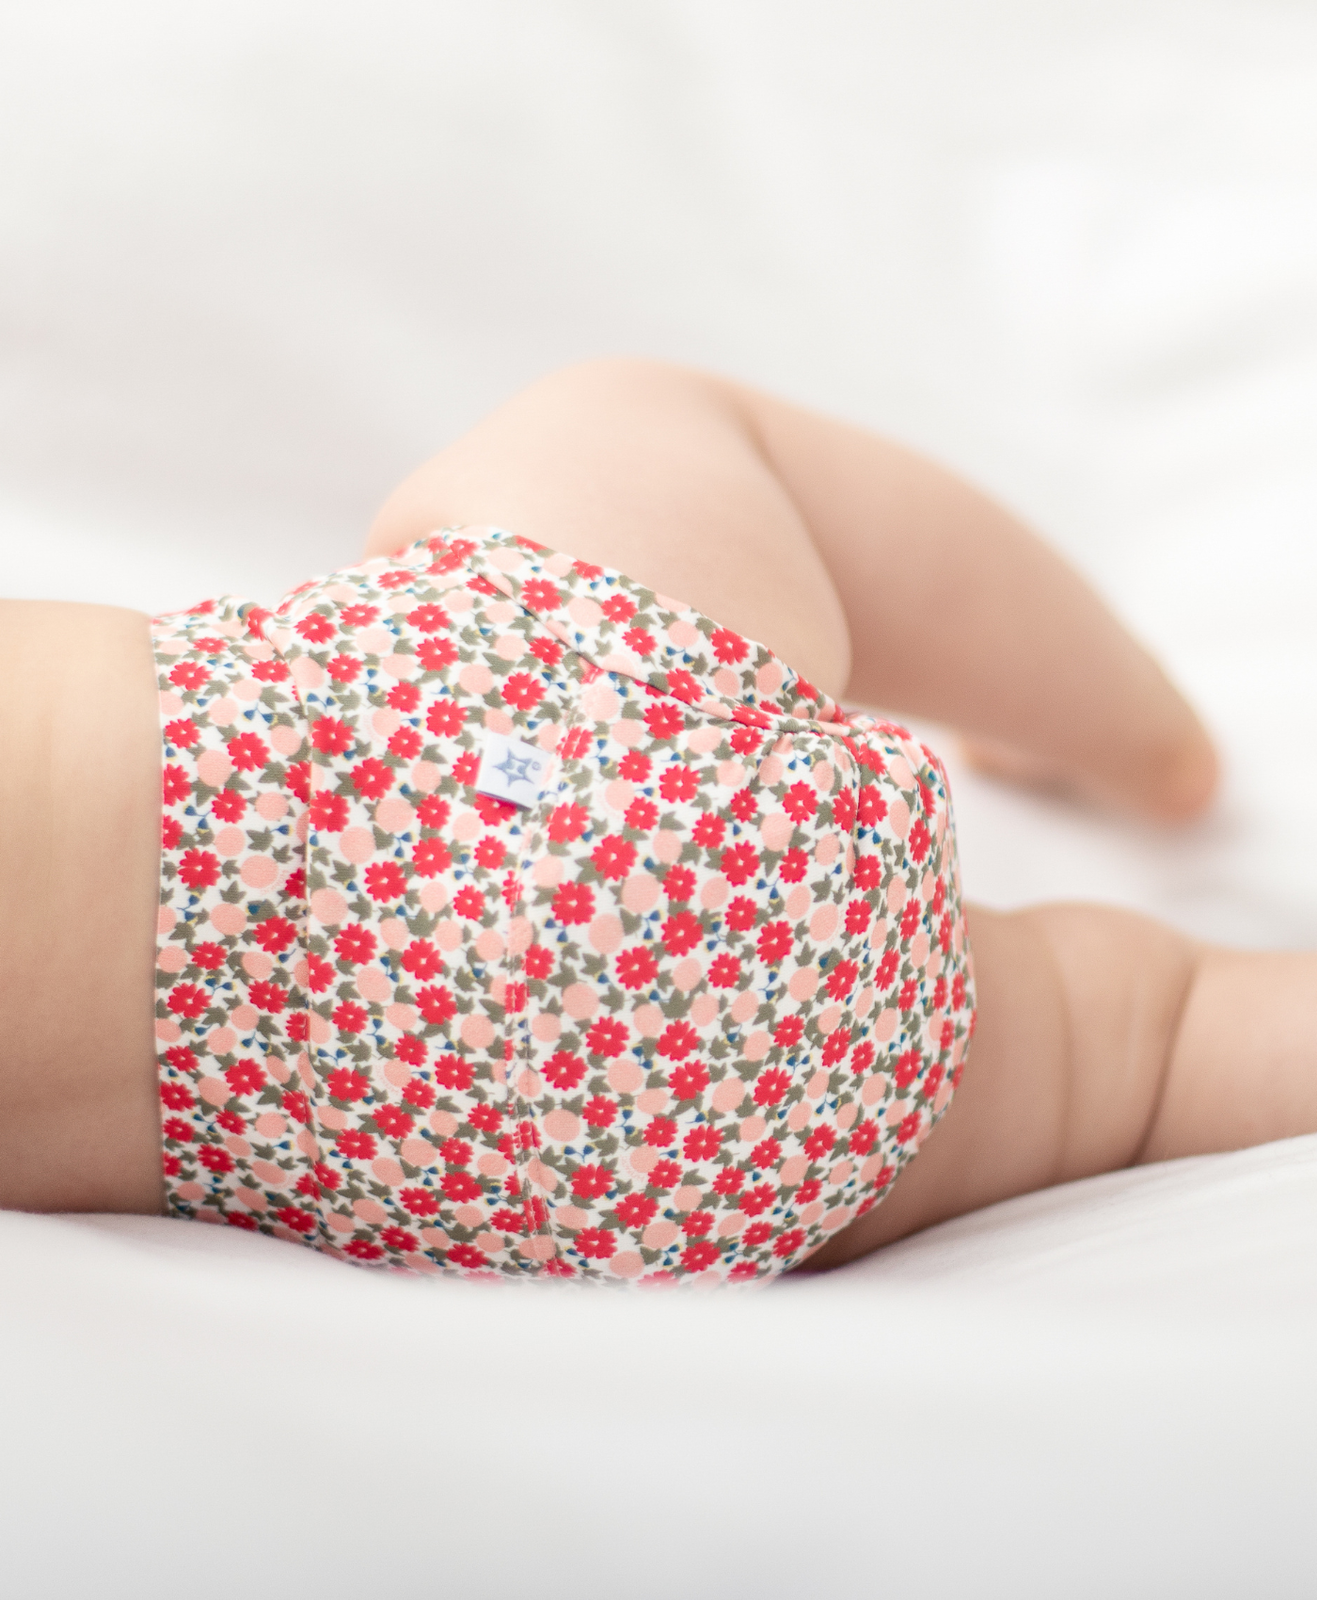 Un bébé avec une couche hamac fleurie